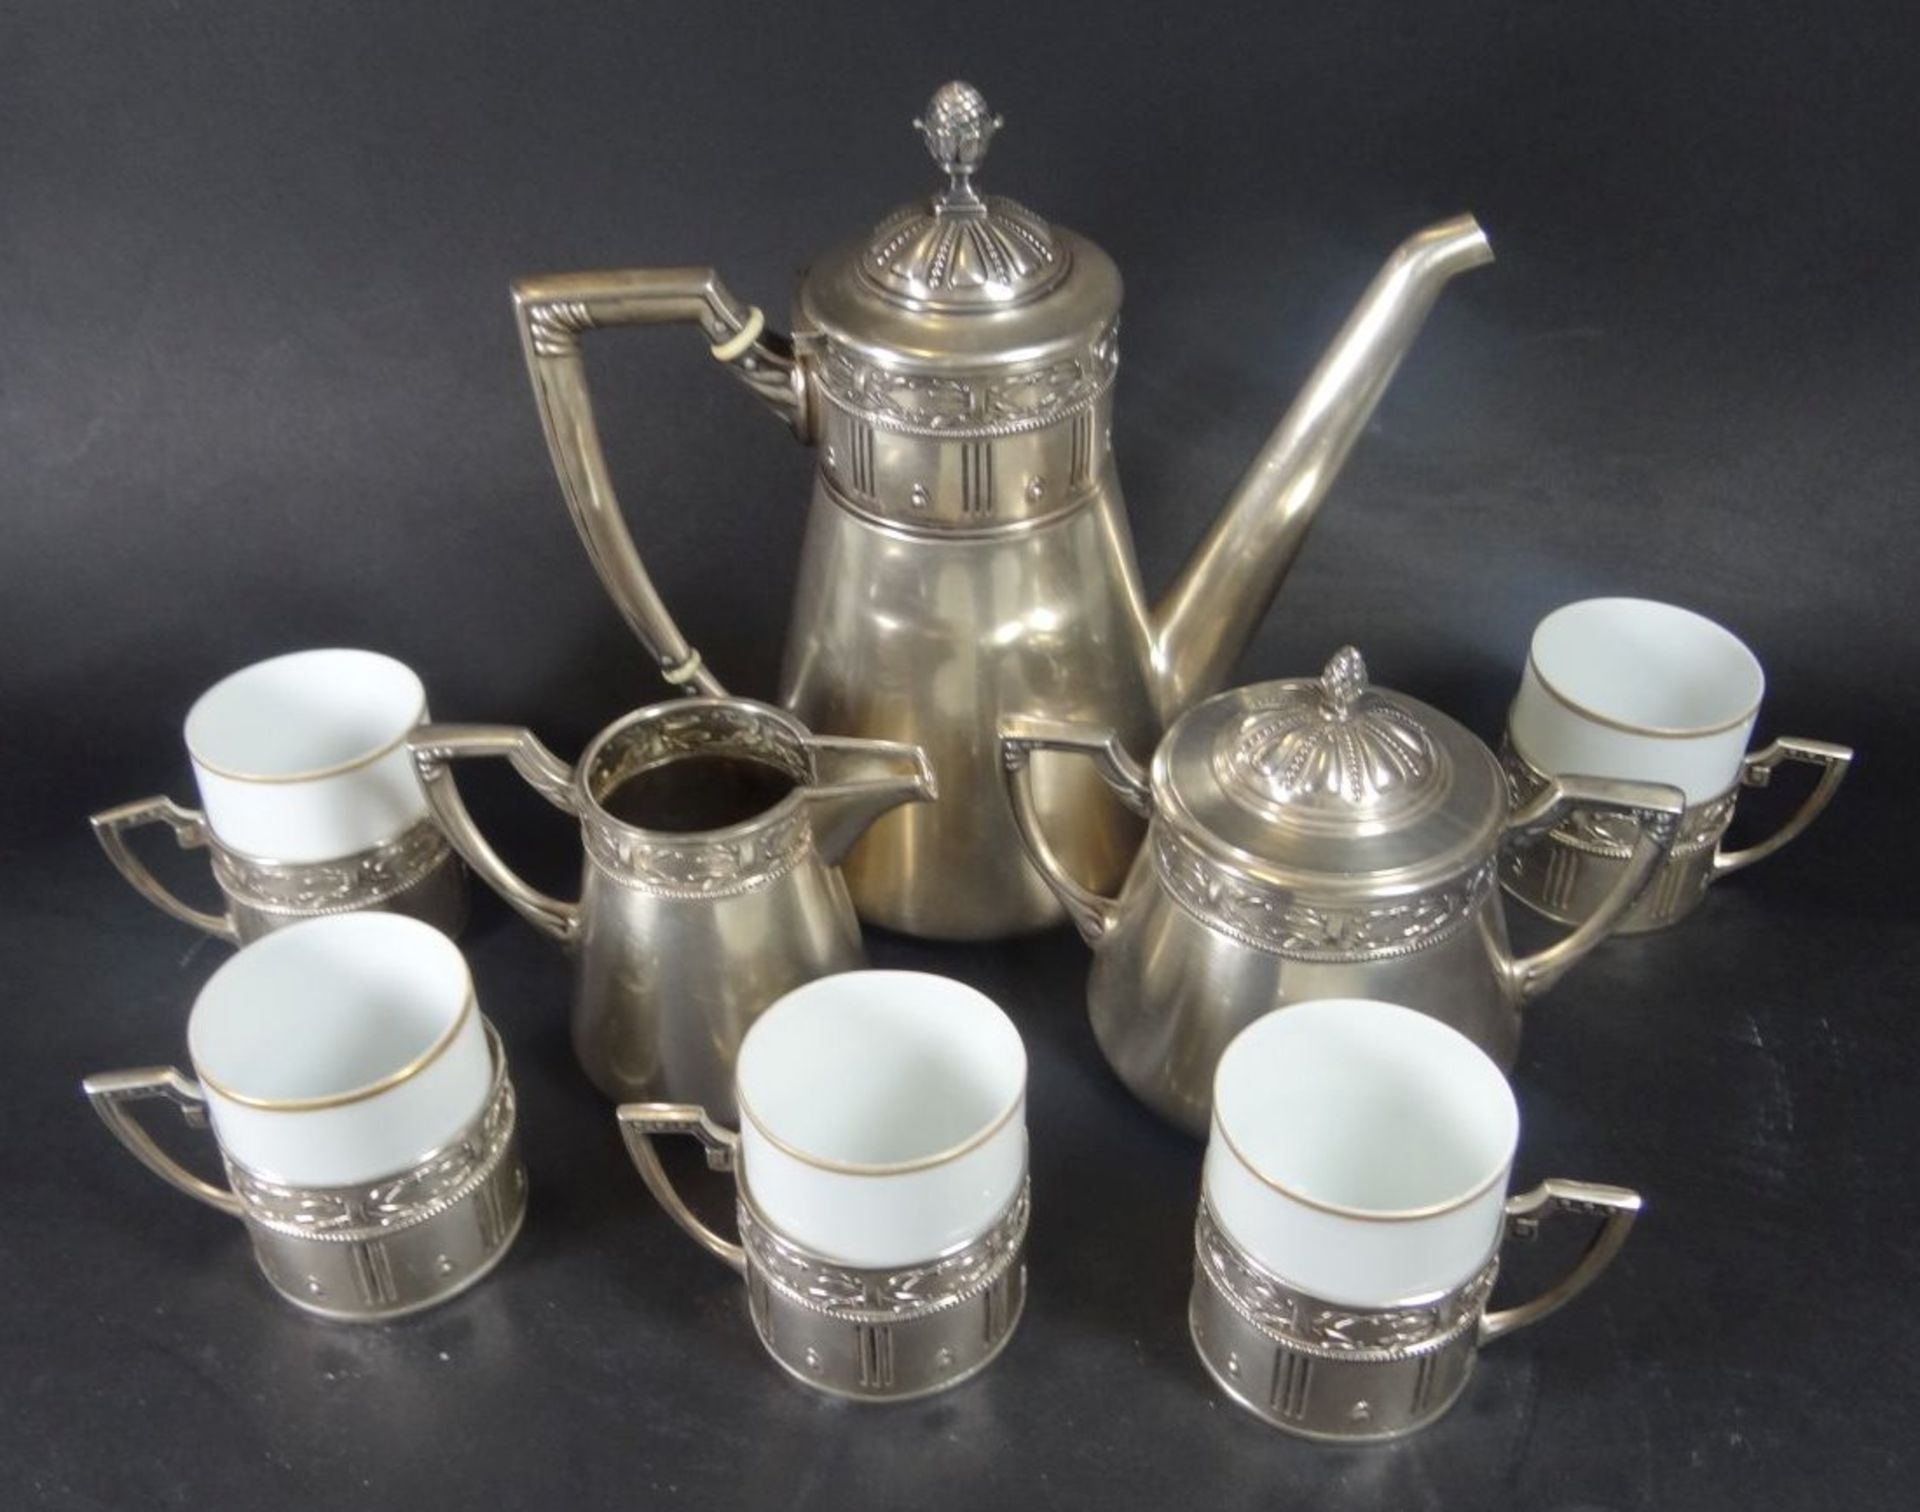 Silber-800- Jugendstil-Kaffeekern mit 5 Tassen, Silbermontur, Kanne H-17,5 cm, Gewicht zus. 830 gra - Image 2 of 5